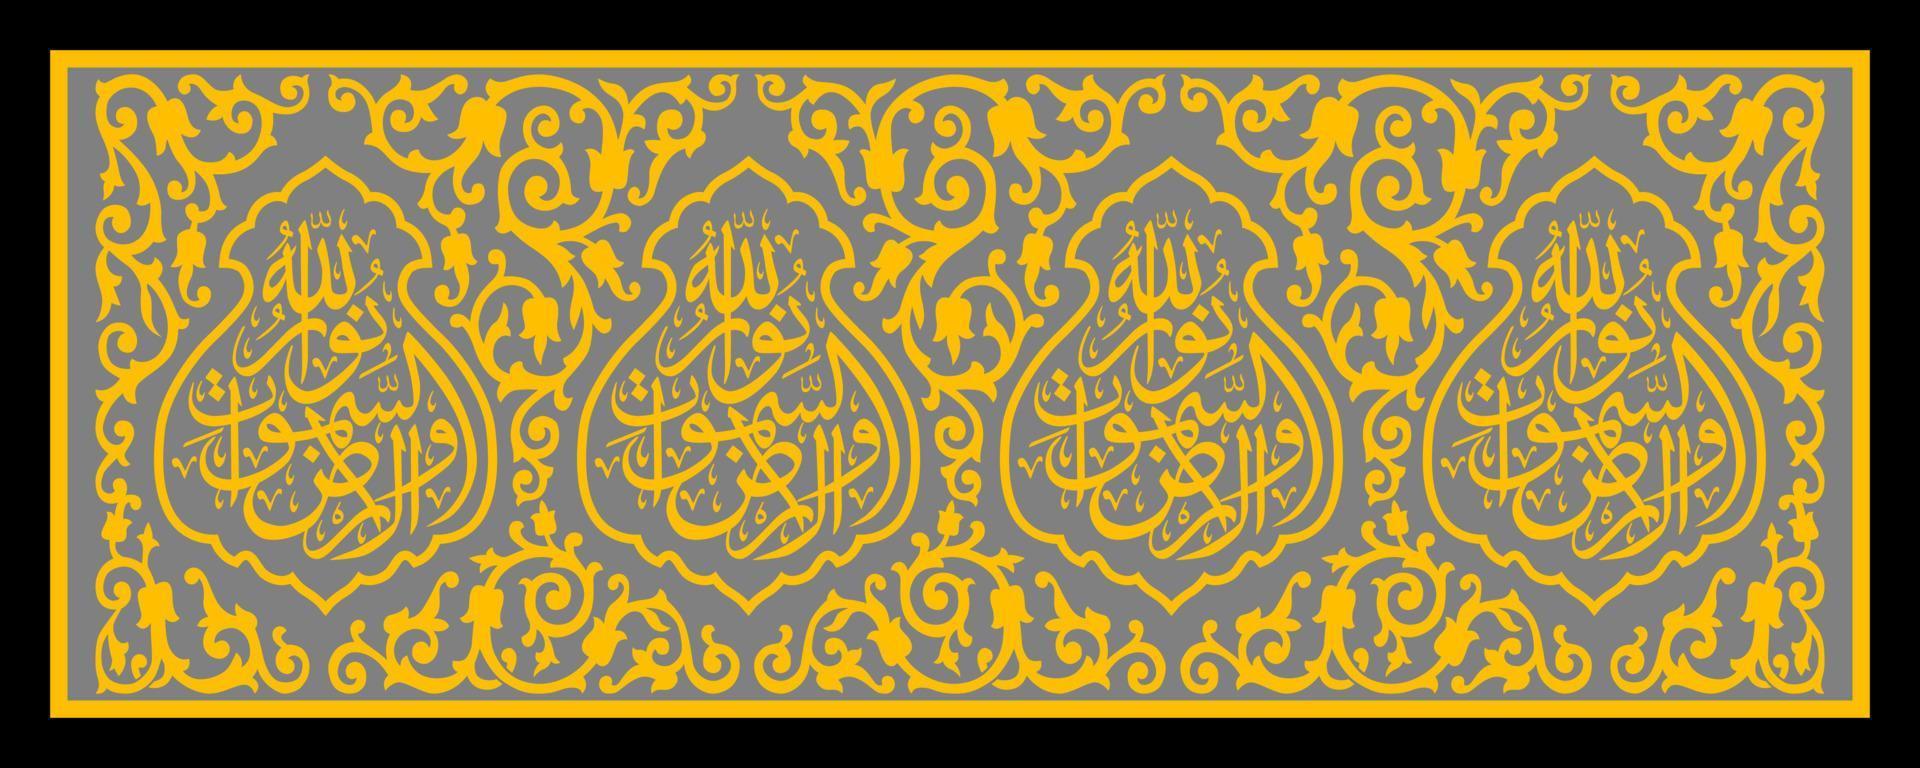 caligrafia árabe kiswah a porta da kaaba, traduzida dizendo o nome de allah, o mais misericordioso, o mais misericordioso..... vetor